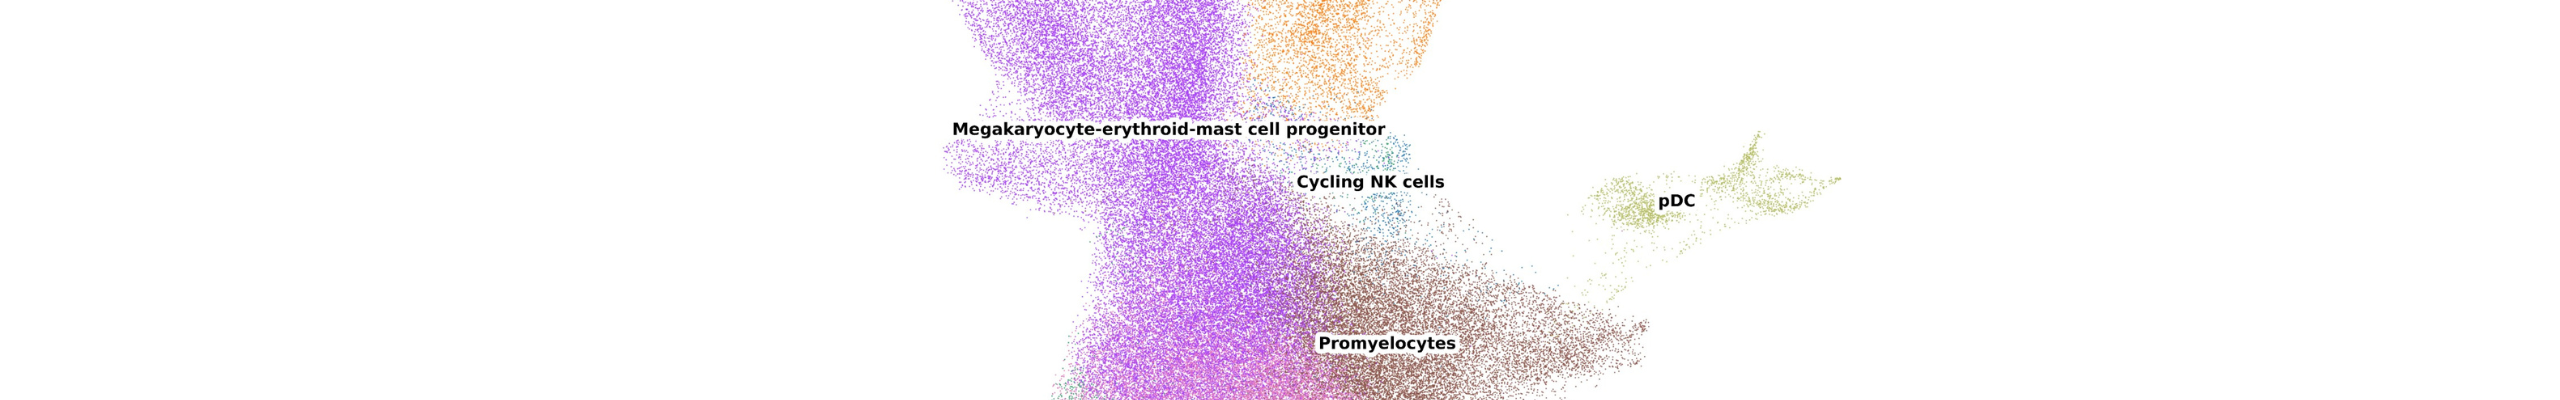 strumenti per l’analisi di dati ottenuti da sequenziamento dell'RNA a cellula singola 2560x400